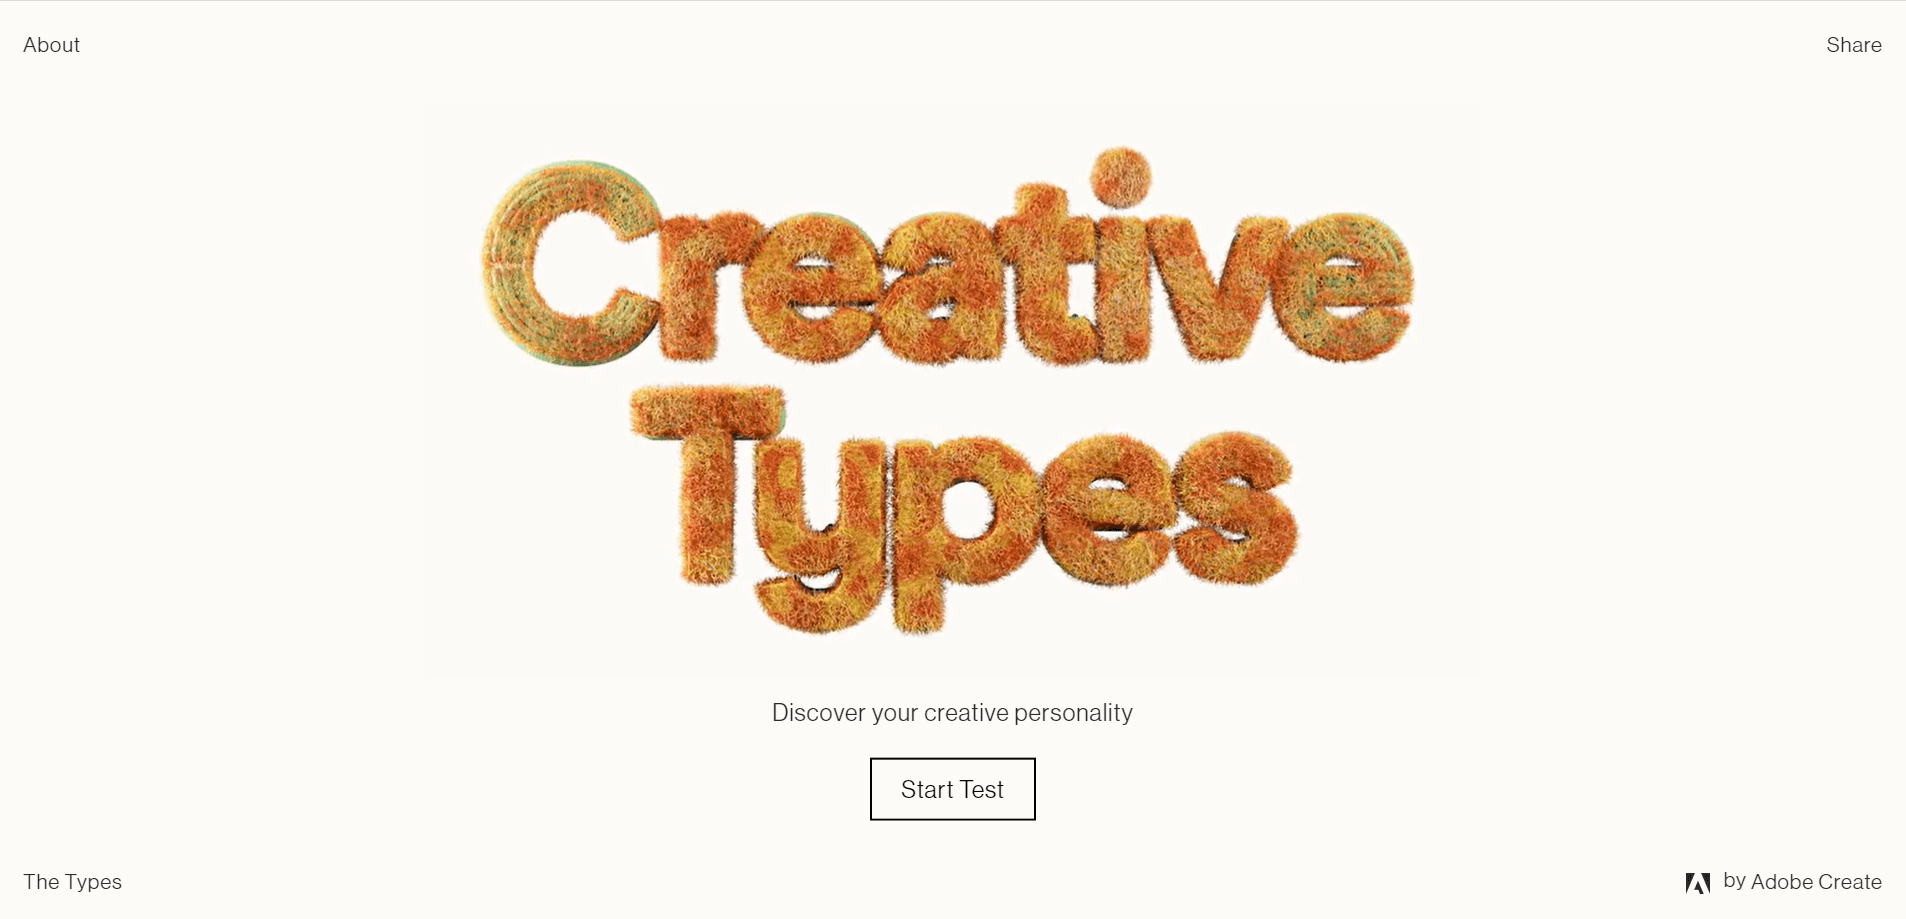 Il microsito di Adobe: “Creative Types”